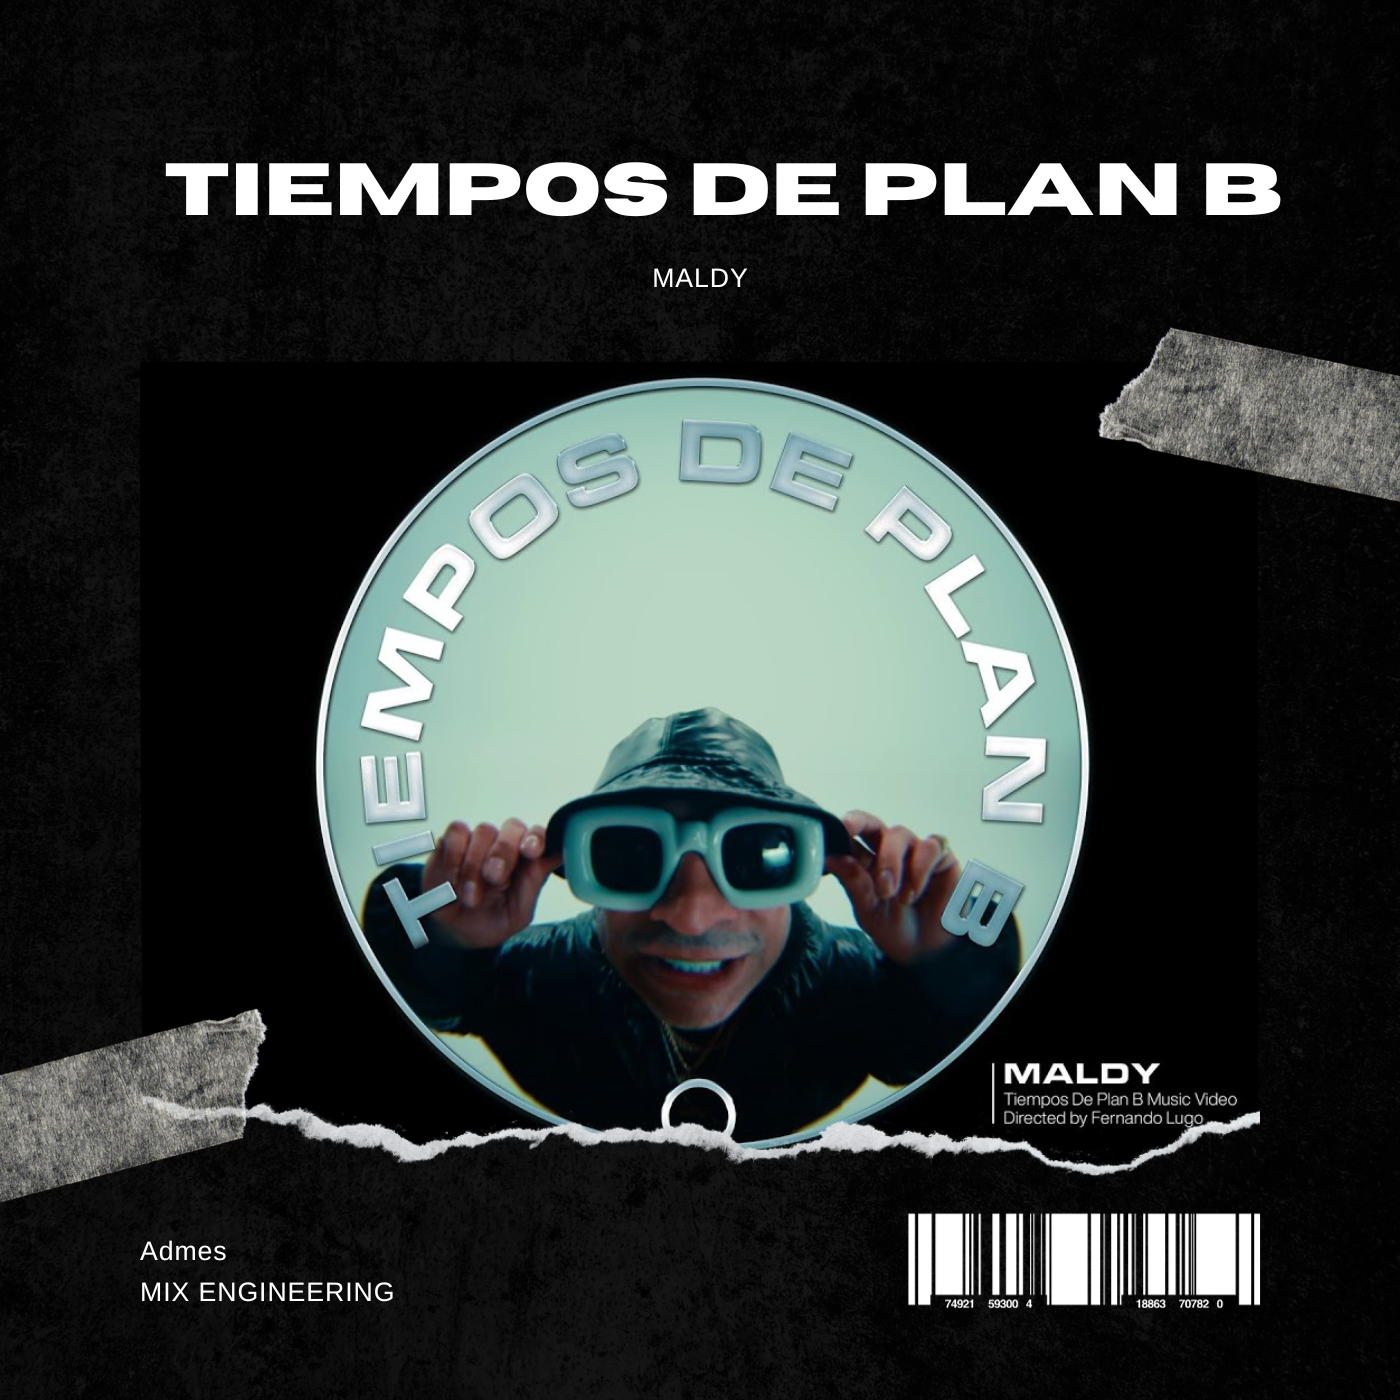 Plan B Tiempos Maldy Old school Reggaeton Admes 